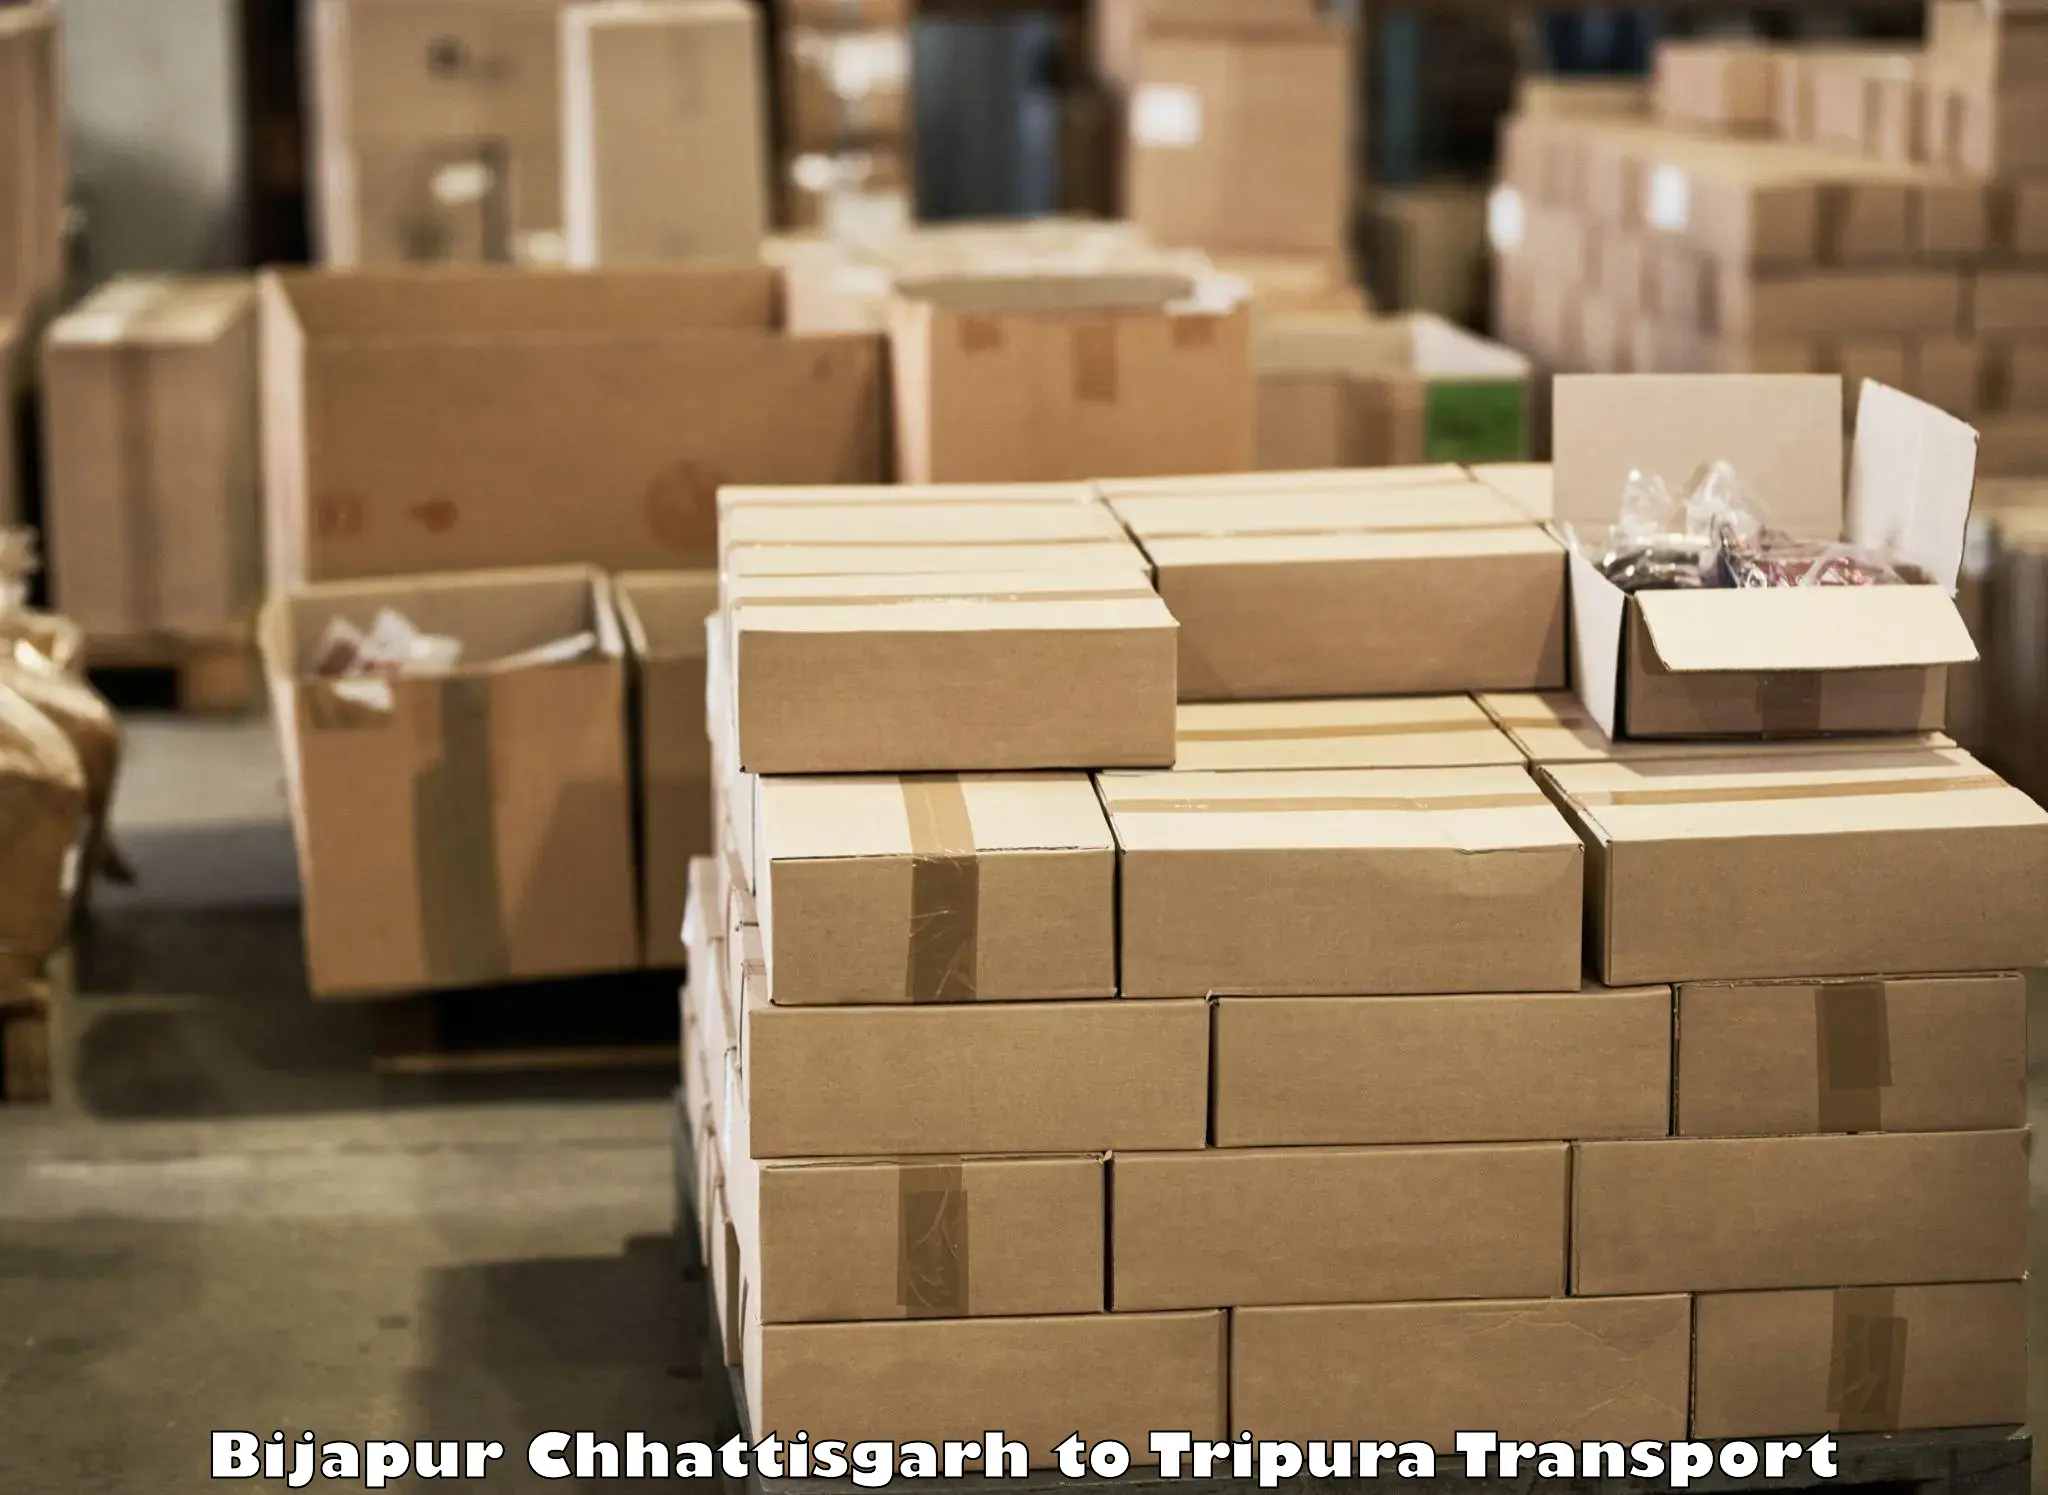 Online transport service Bijapur Chhattisgarh to Dharmanagar